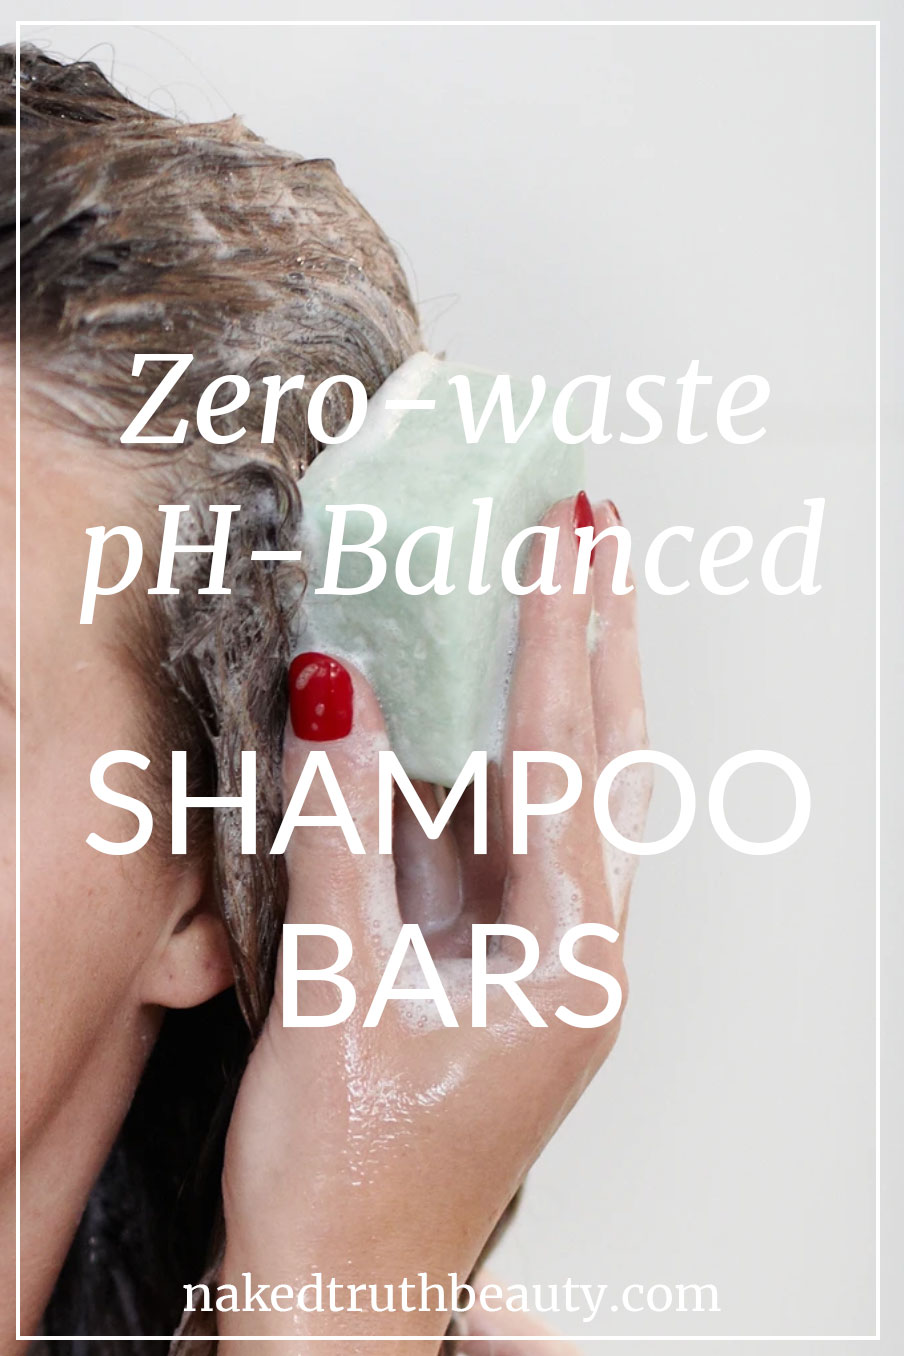 Zero-waste, ph balanced, package free shampoo bars, ethique